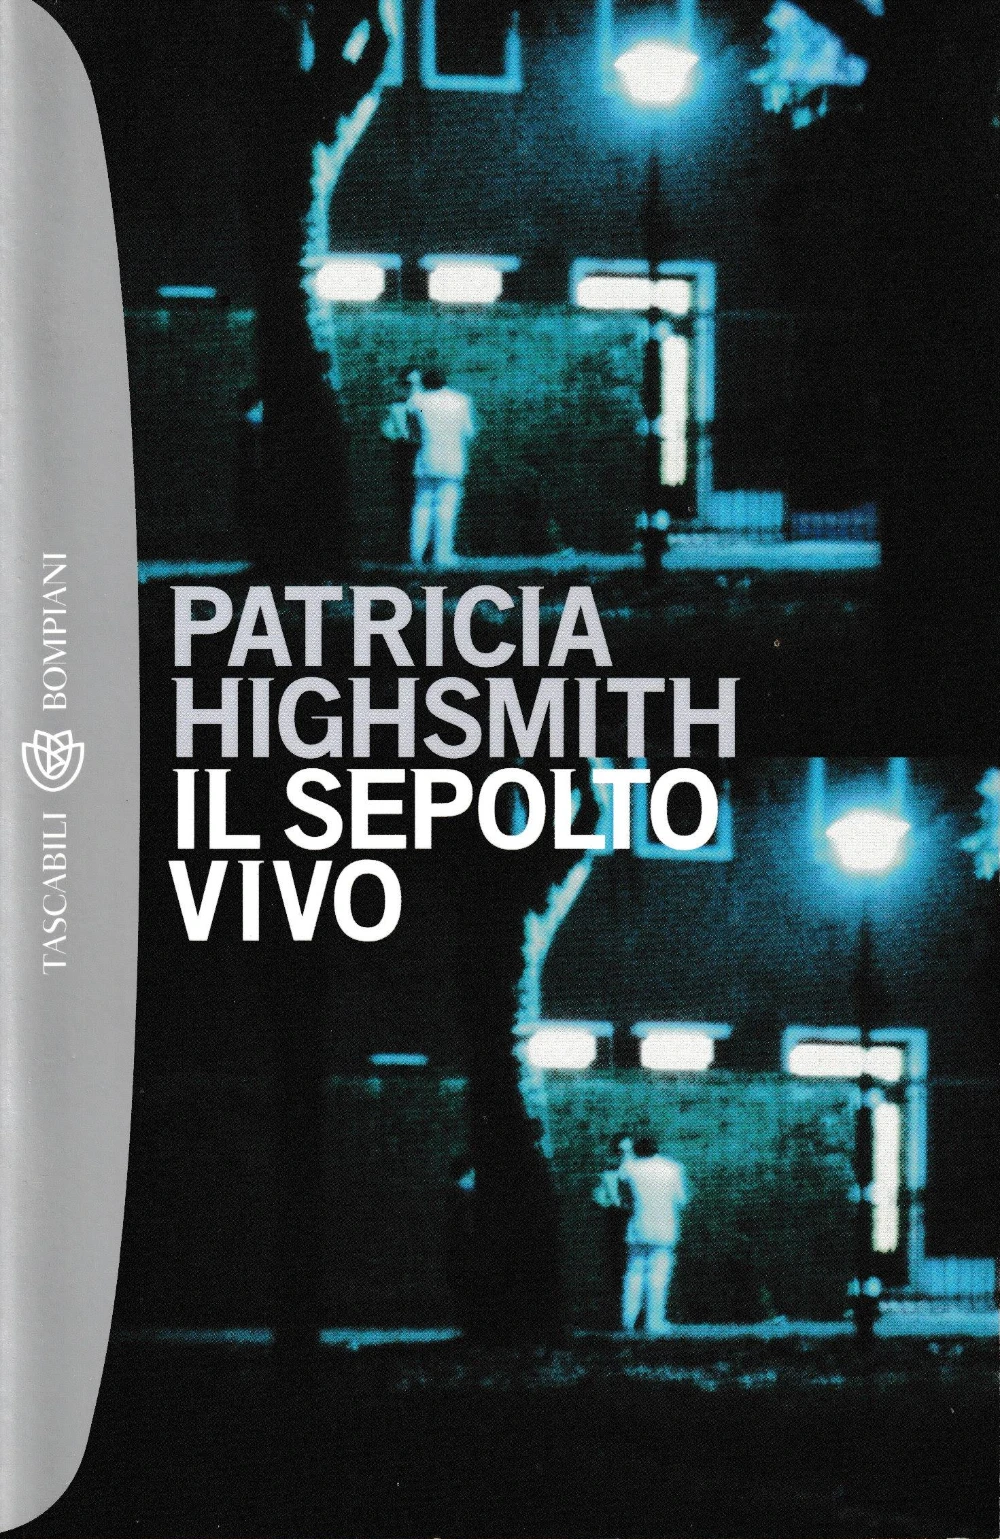 Patricia Highsmith: Il sepolto vivo (Paperback, Italiano language, 2001, Bompiani)